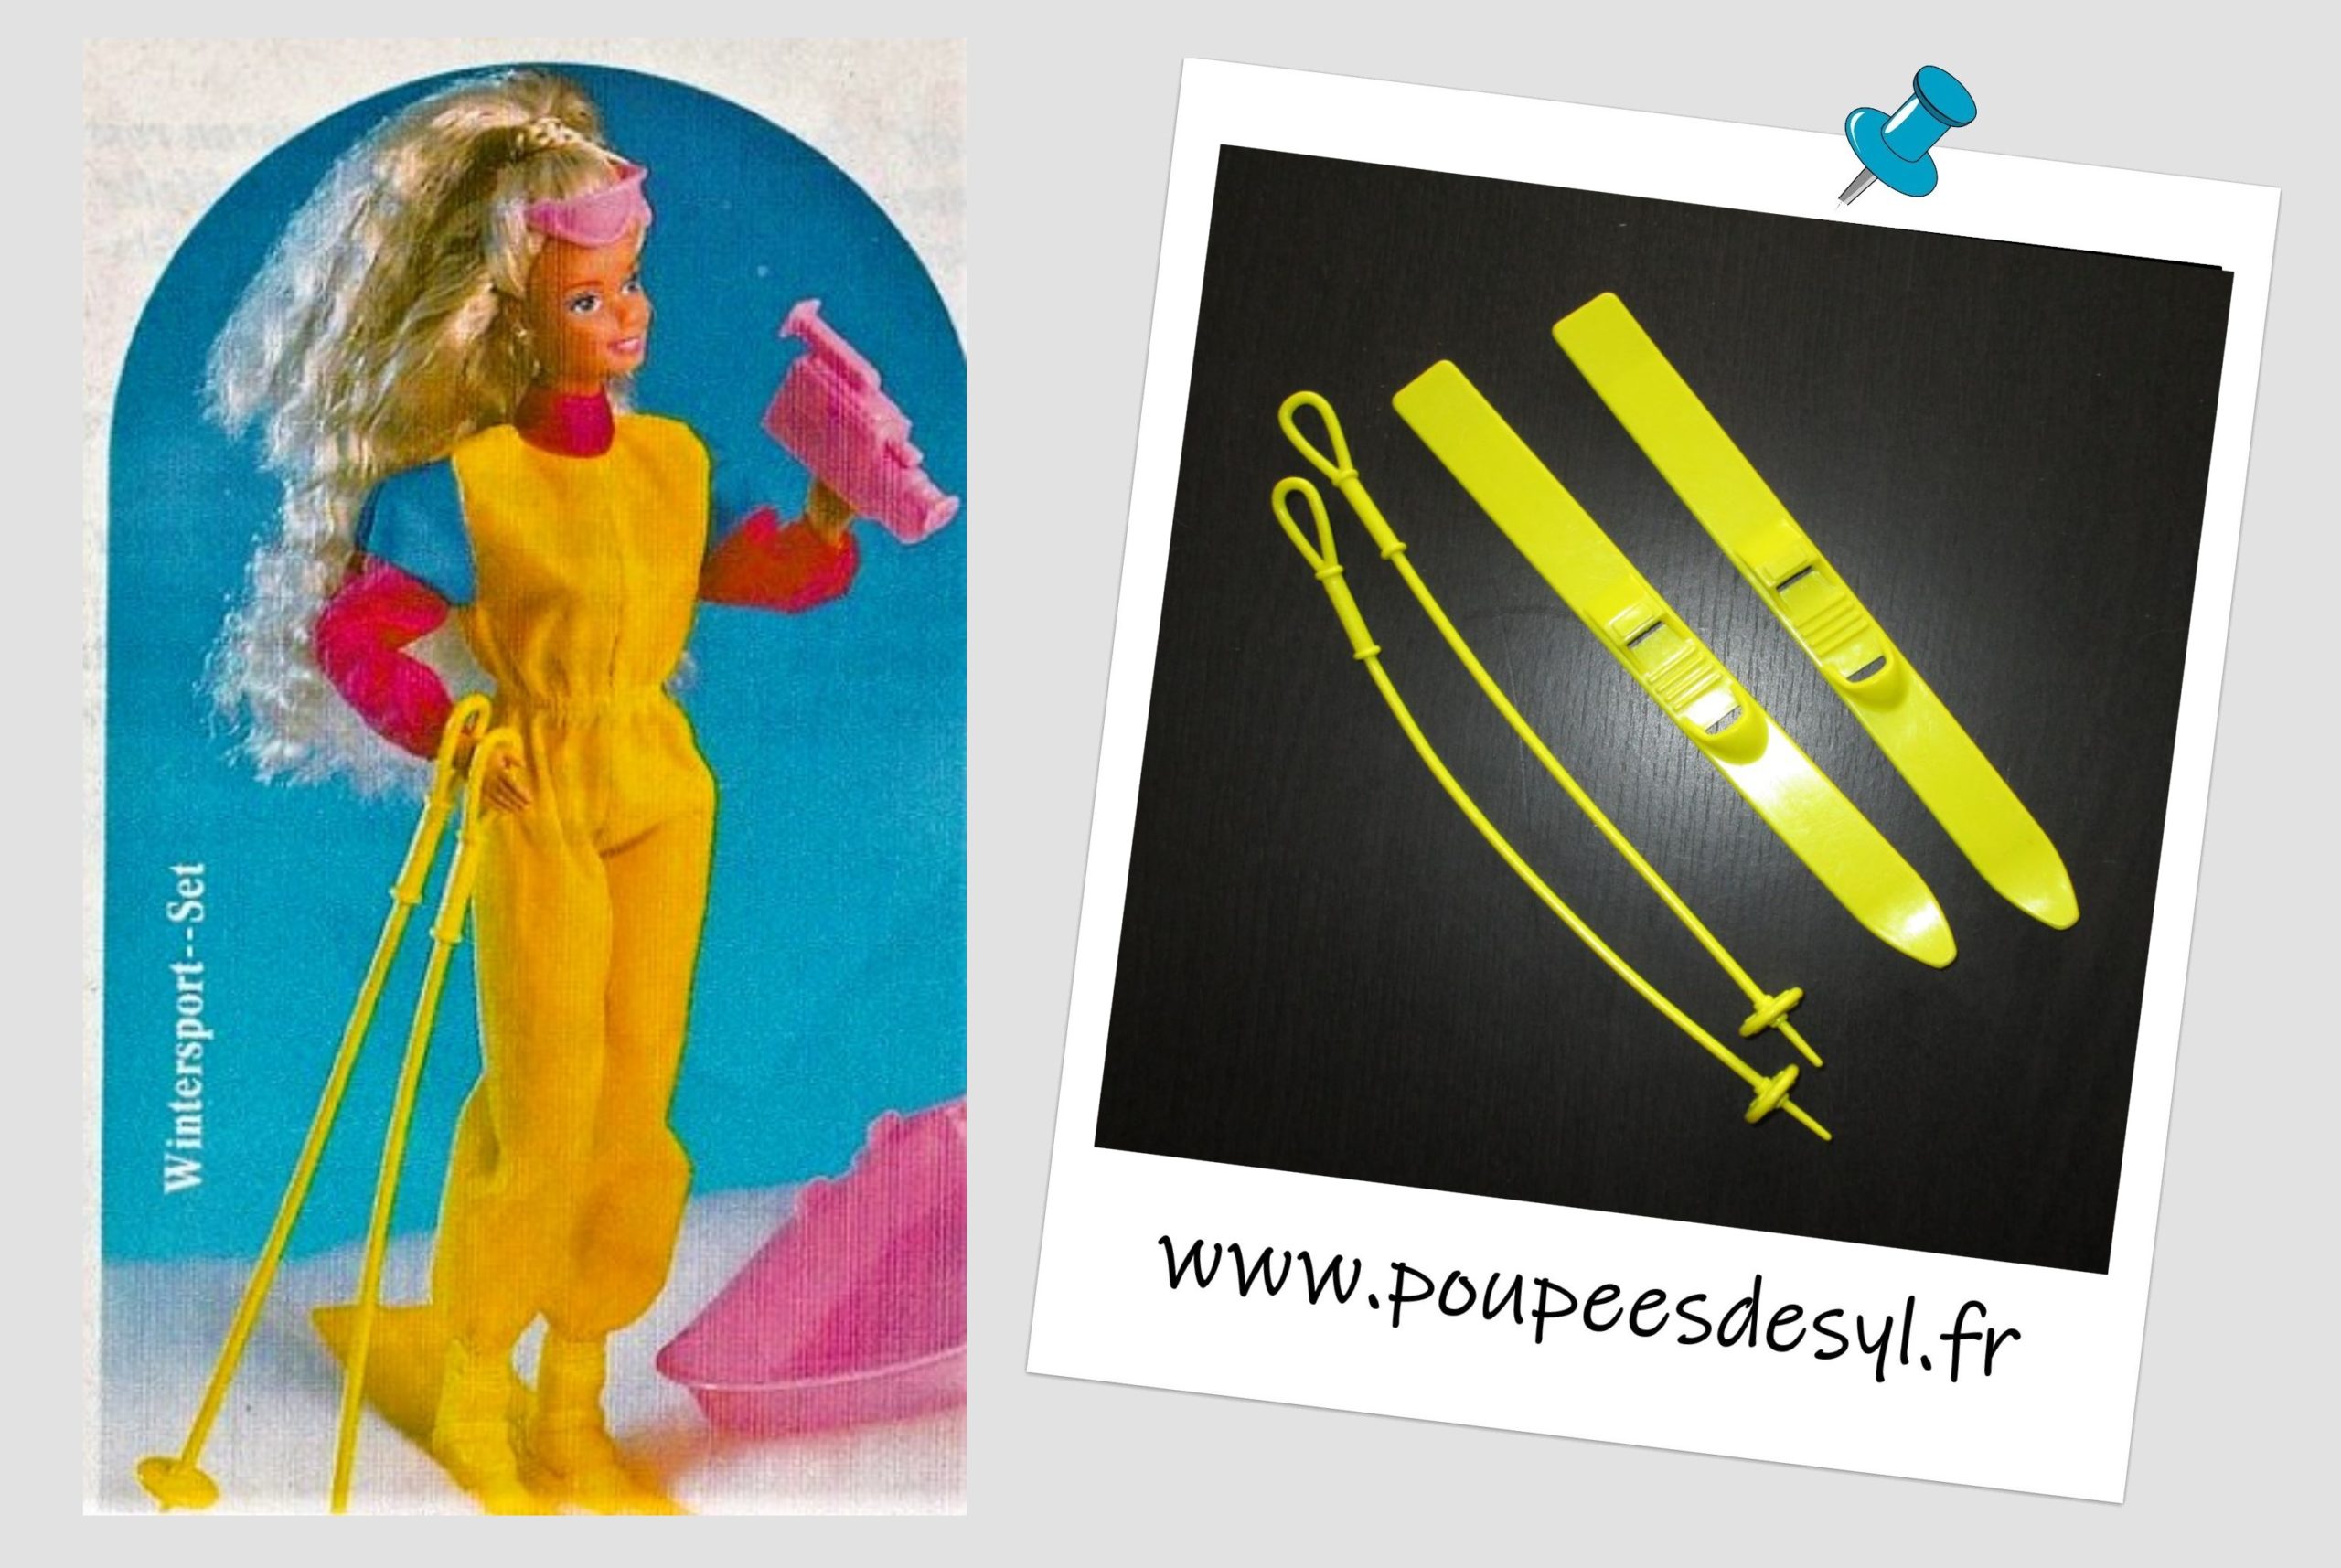 BARBIE – Paire de skis et batons jaunes – DRESS’N PLAY – #7433 – 1990